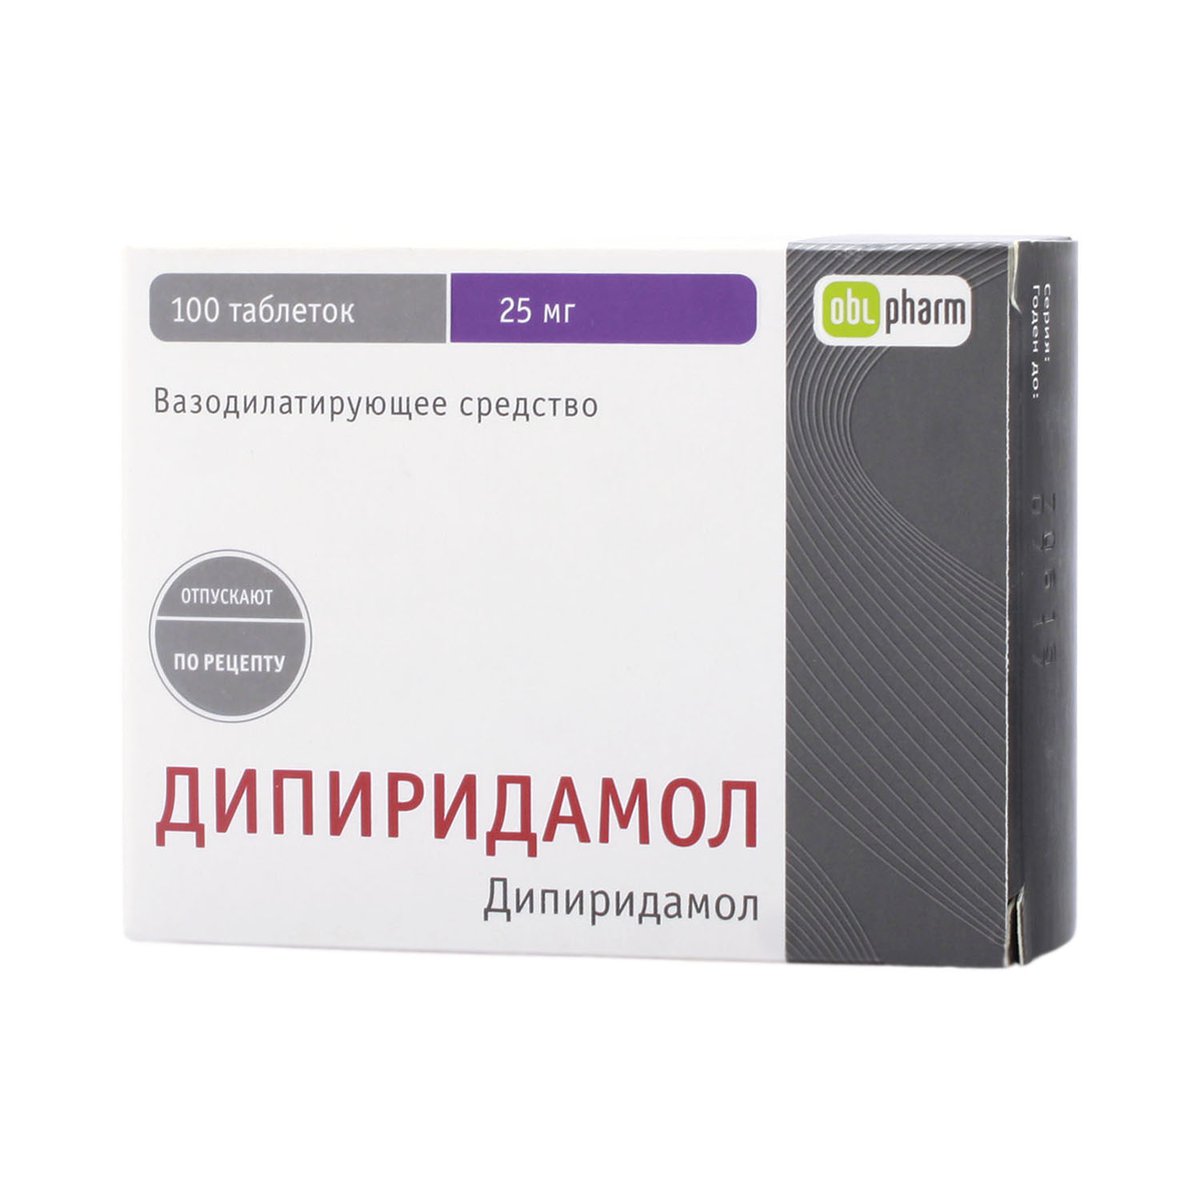 Дипиридамол-obl (таблетки, 100 шт, 25 мг) - цена,  онлайн в .